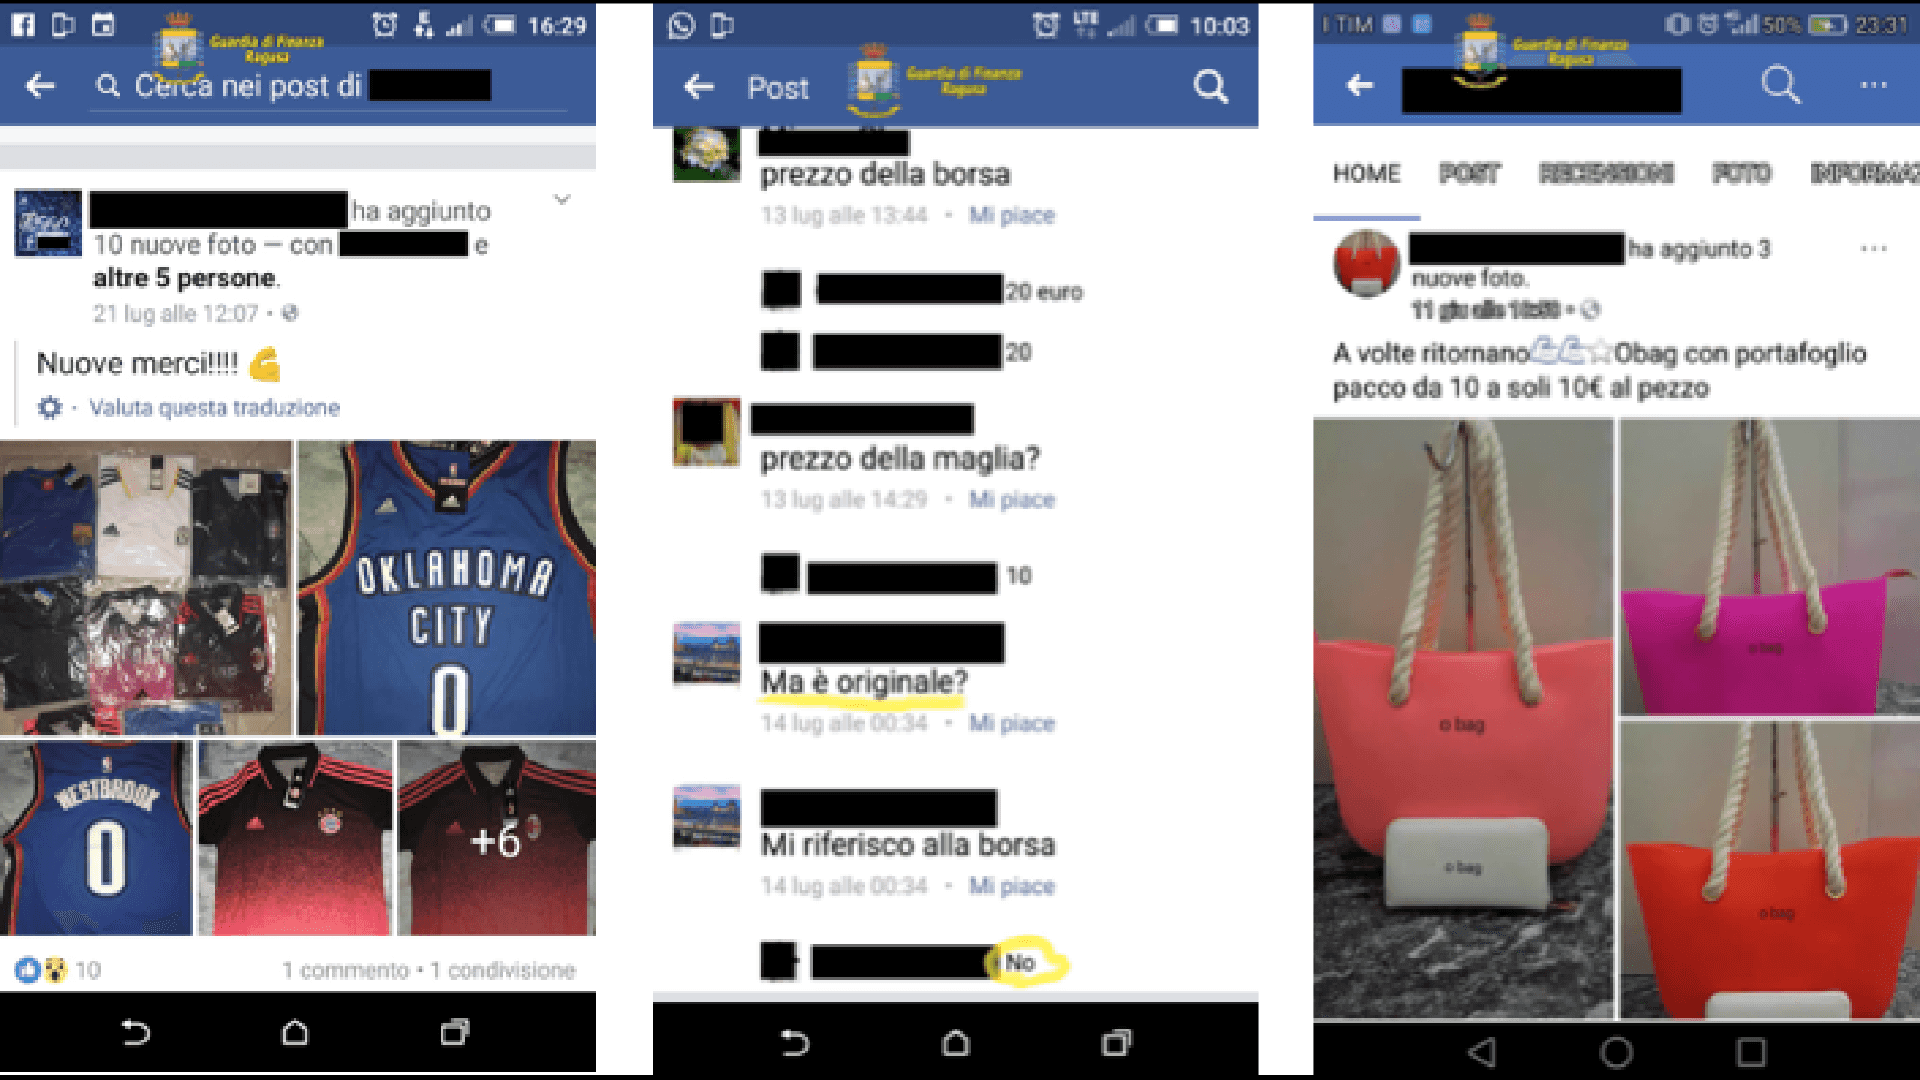 Contraffazione: Operazione "Made in Facebook" blitz contro vendite on line